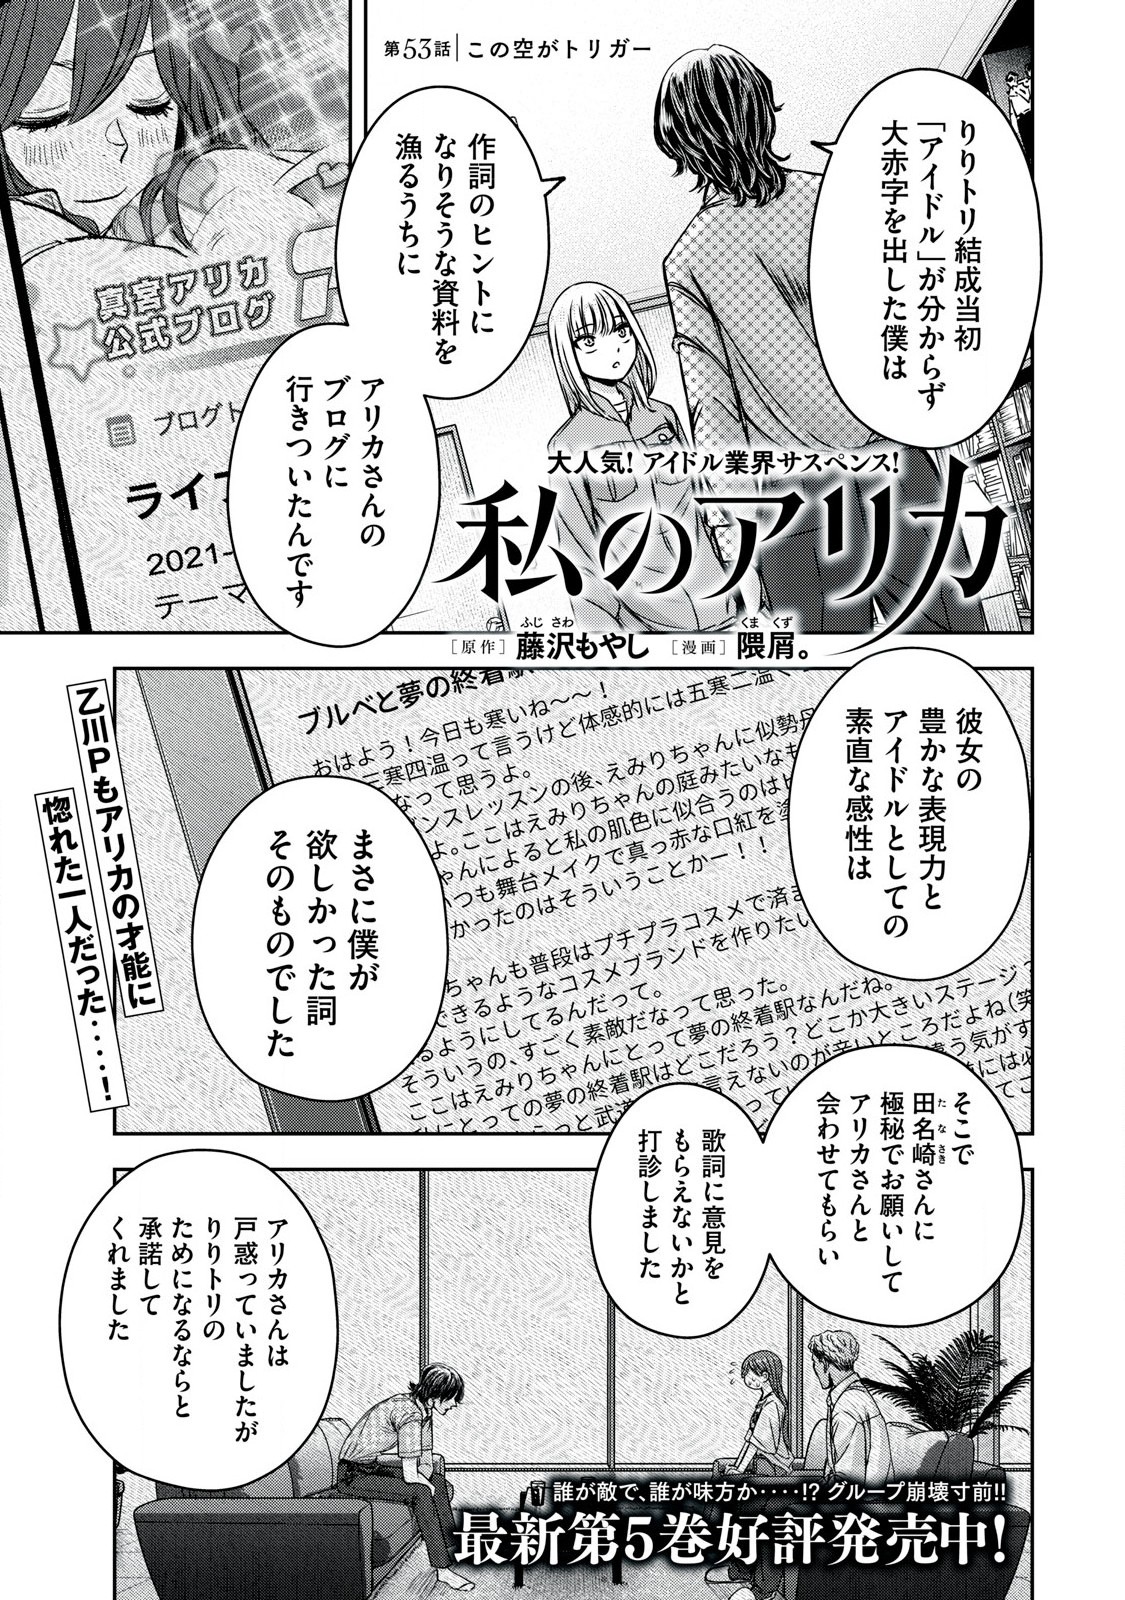 Watashi no Arika - Chapter 53 - Page 1